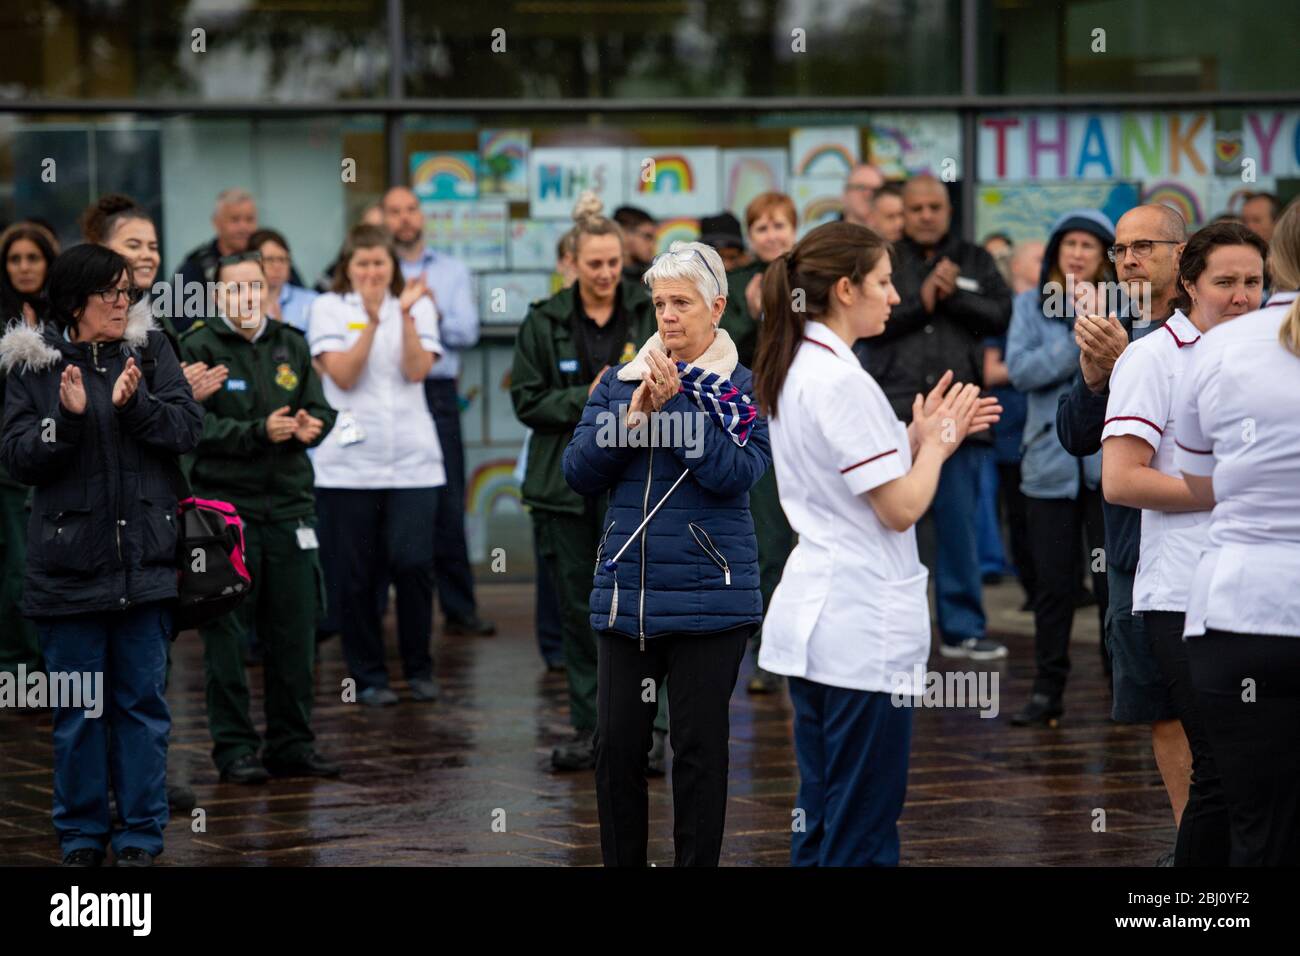 Les membres du personnel se félicitent devant l'hôpital Royal Derby, après une minute de silence pour rendre hommage au personnel du NHS et aux principaux travailleurs morts lors de l'éclosion de coronavirus. Banque D'Images